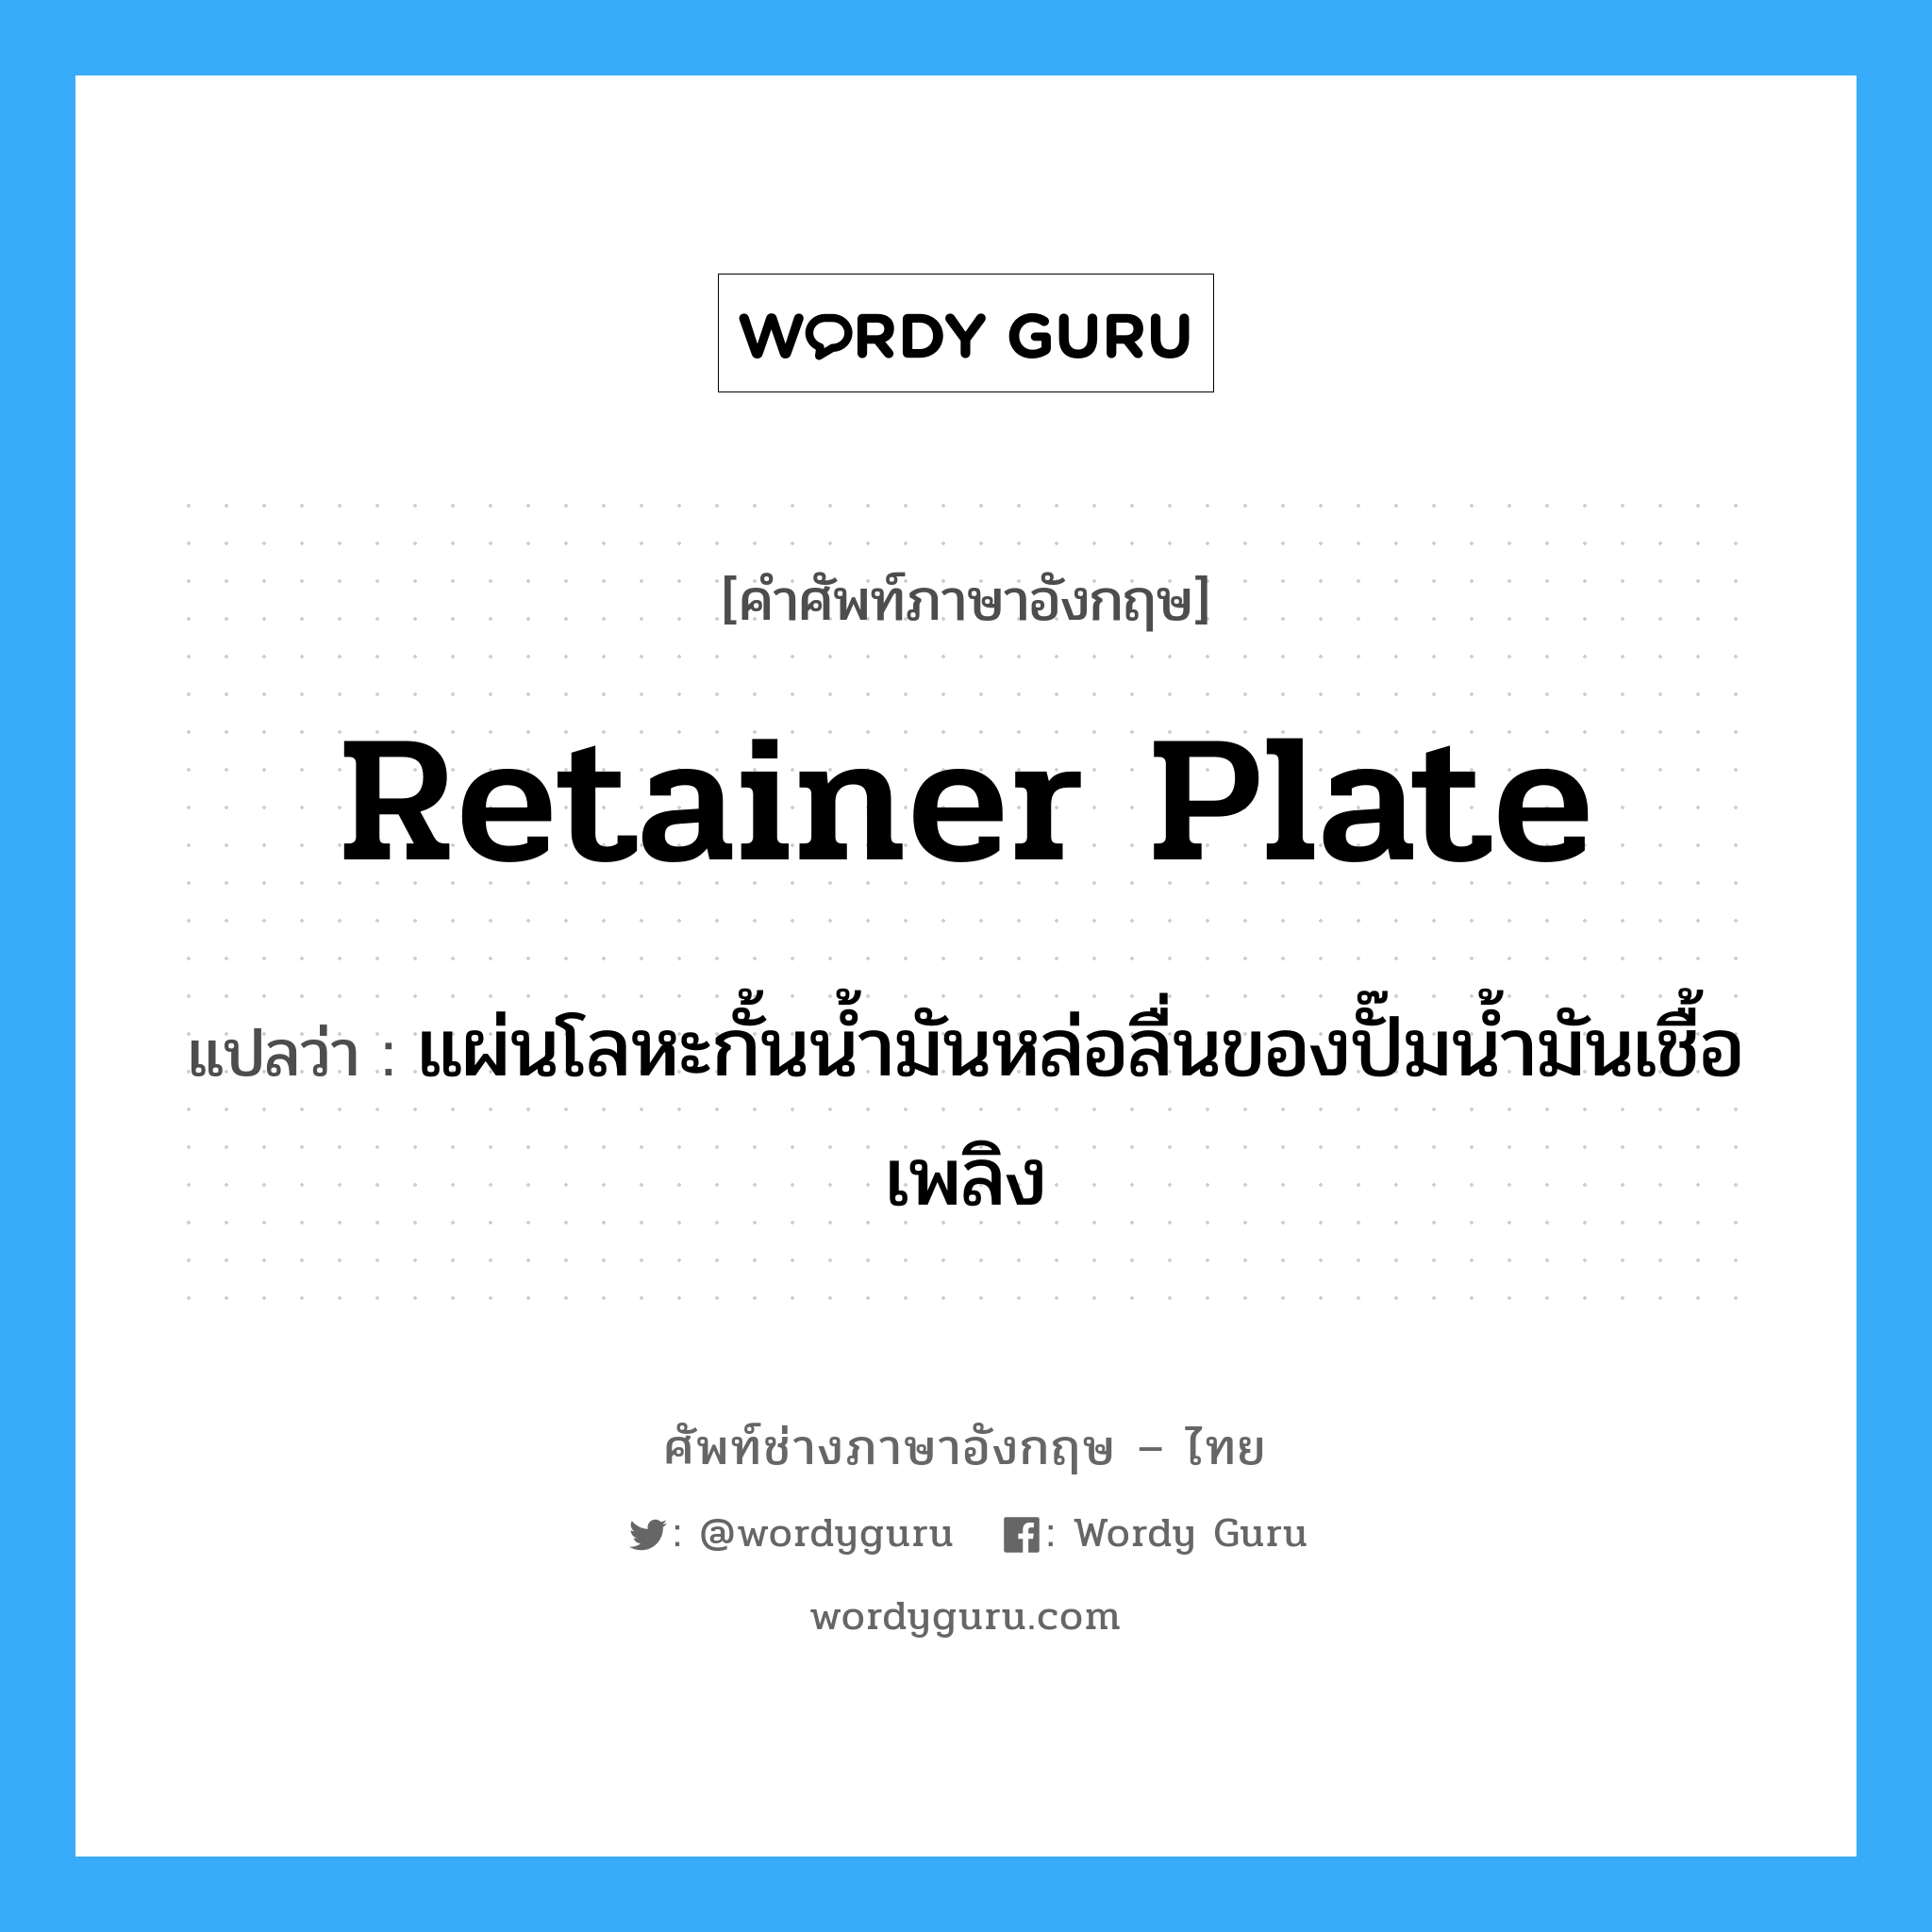 retainer plate แปลว่า?, คำศัพท์ช่างภาษาอังกฤษ - ไทย retainer plate คำศัพท์ภาษาอังกฤษ retainer plate แปลว่า แผ่นโลหะกั้นน้ำมันหล่อลื่นของปั๊มน้ำมันเชื้อเพลิง